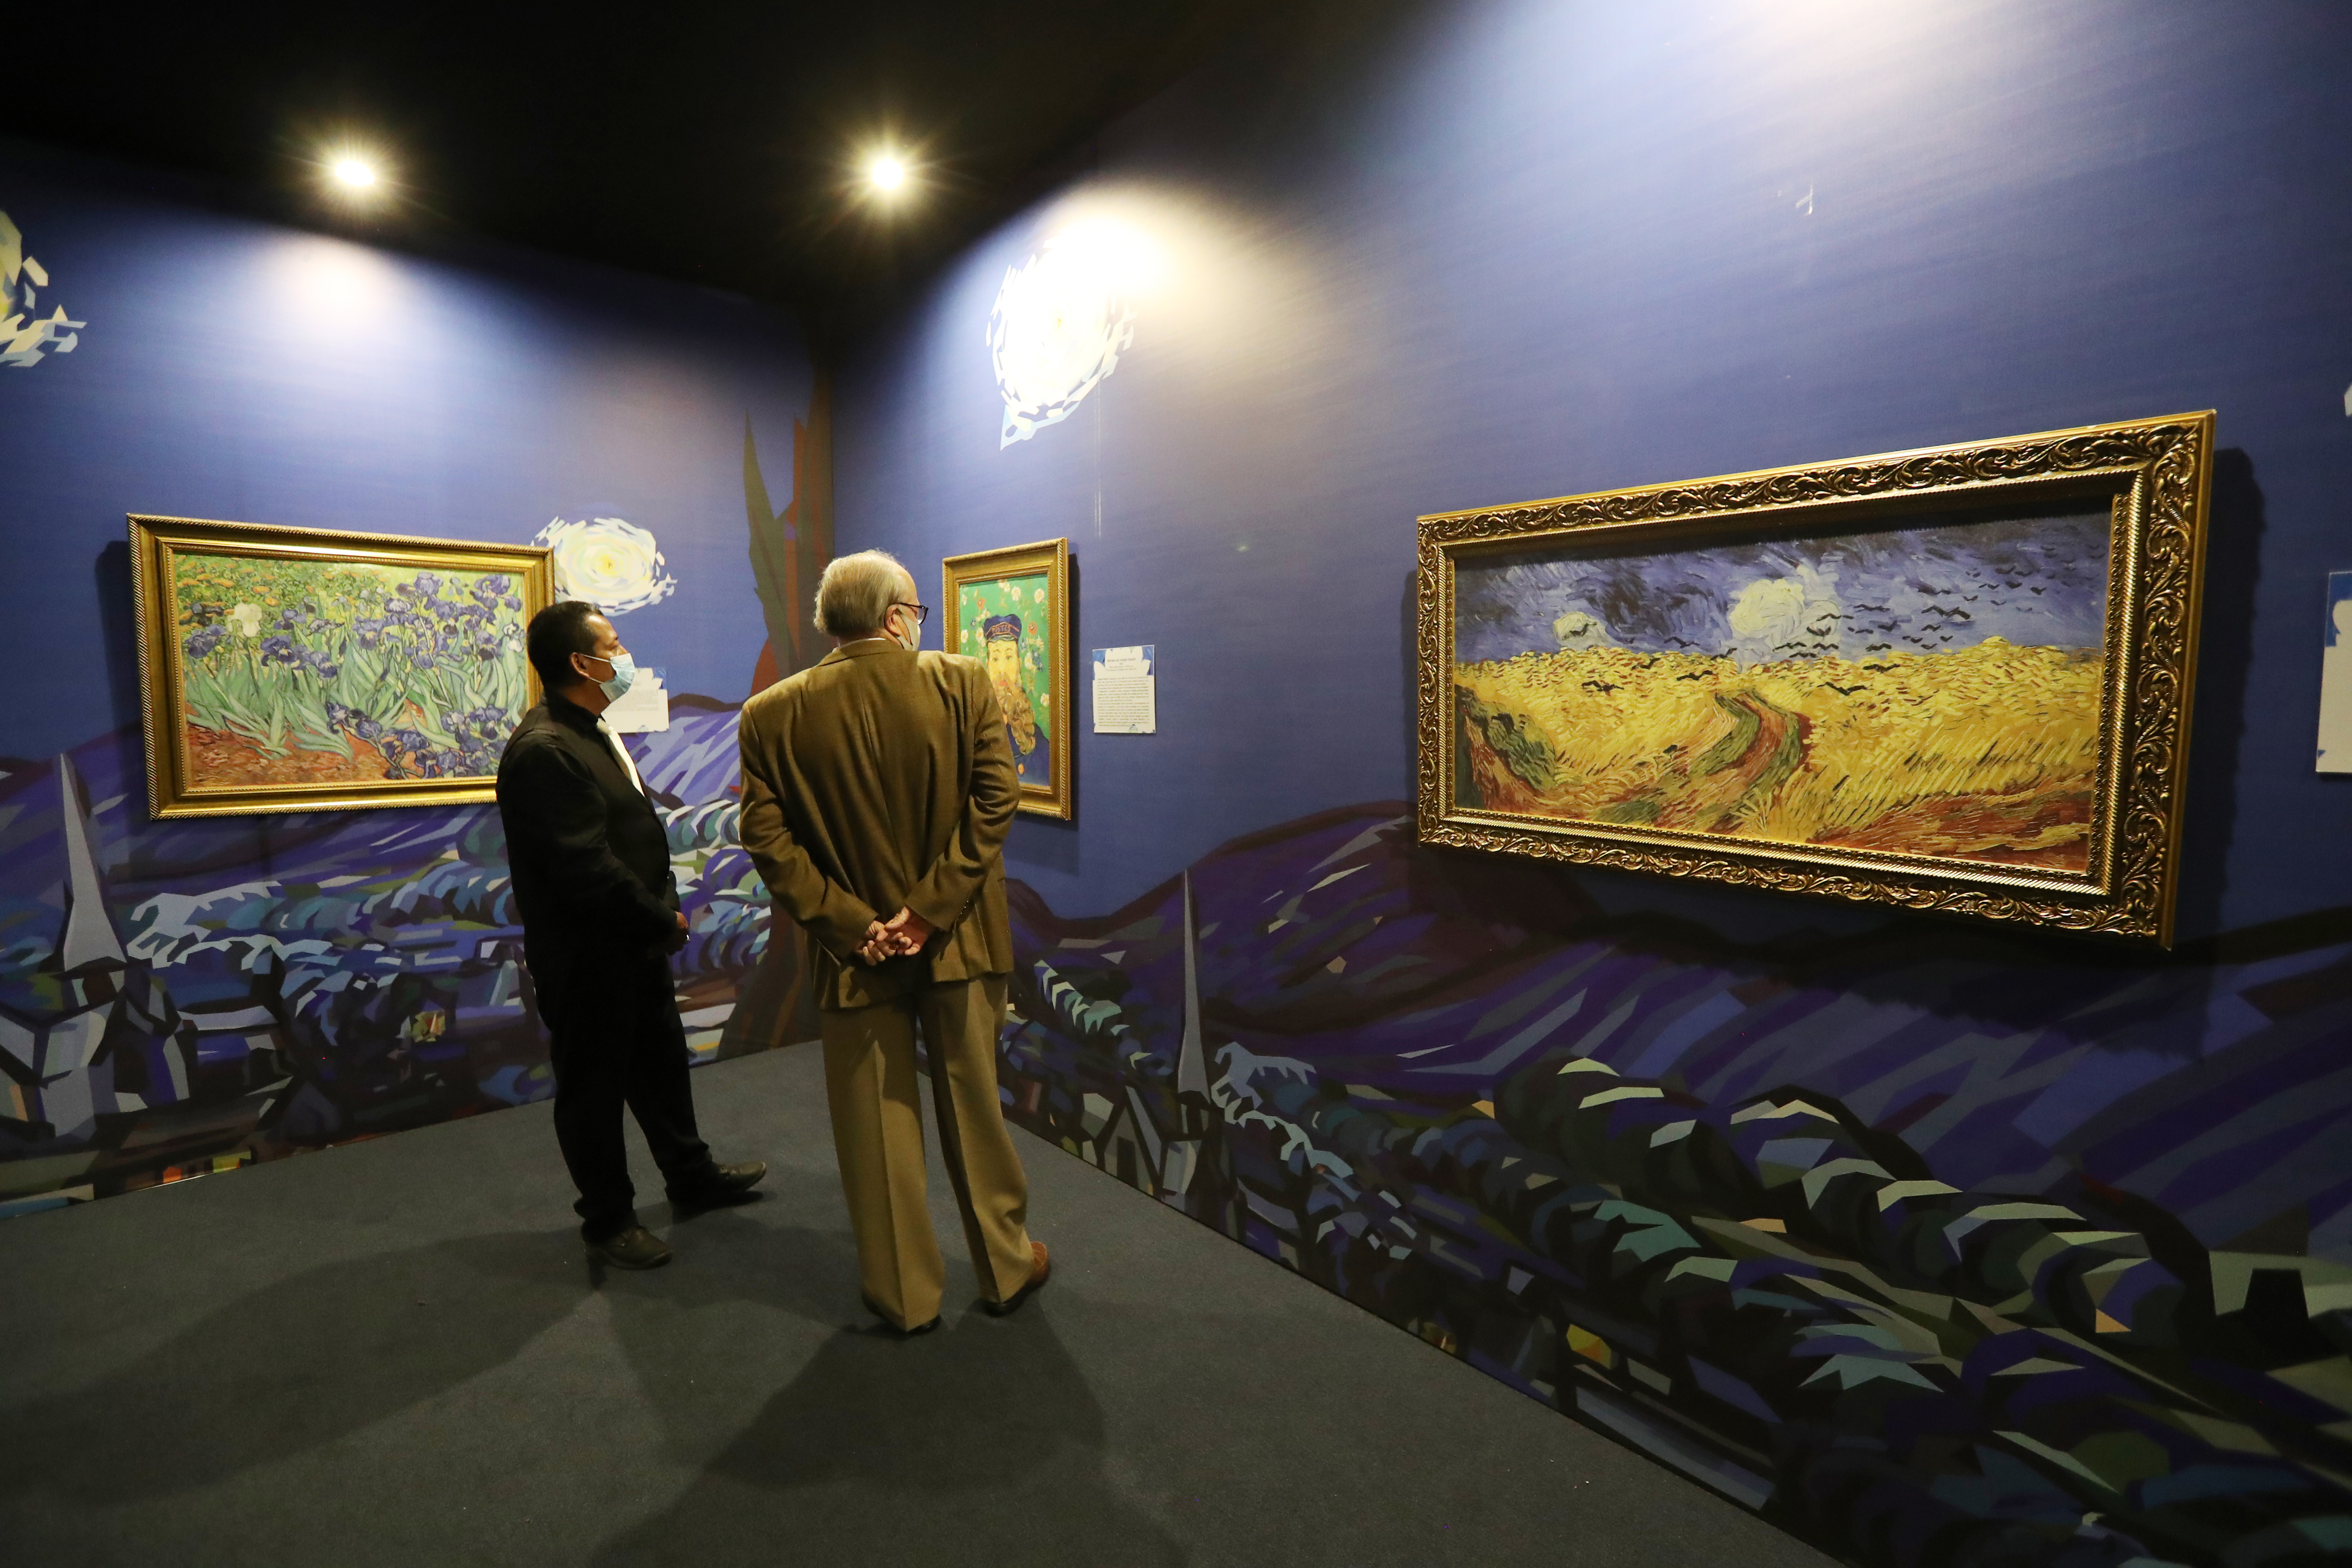 Van Gogh el sueño inmersivo ofrece nueva experiencia inmersiva